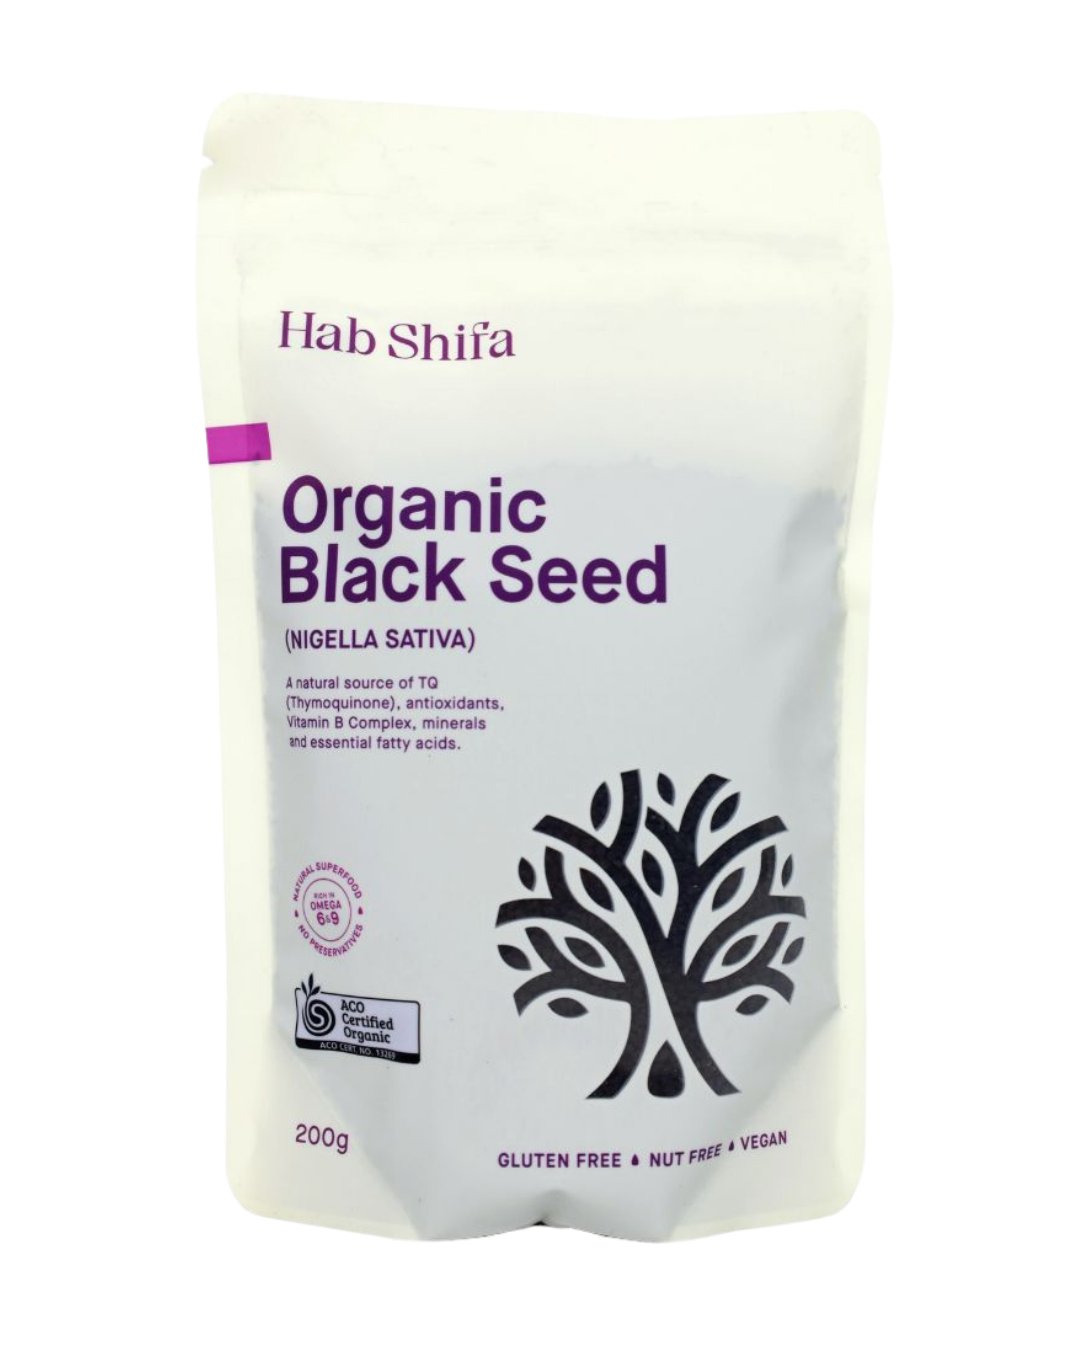 Organic Black Seed Pack - Hab Shifa